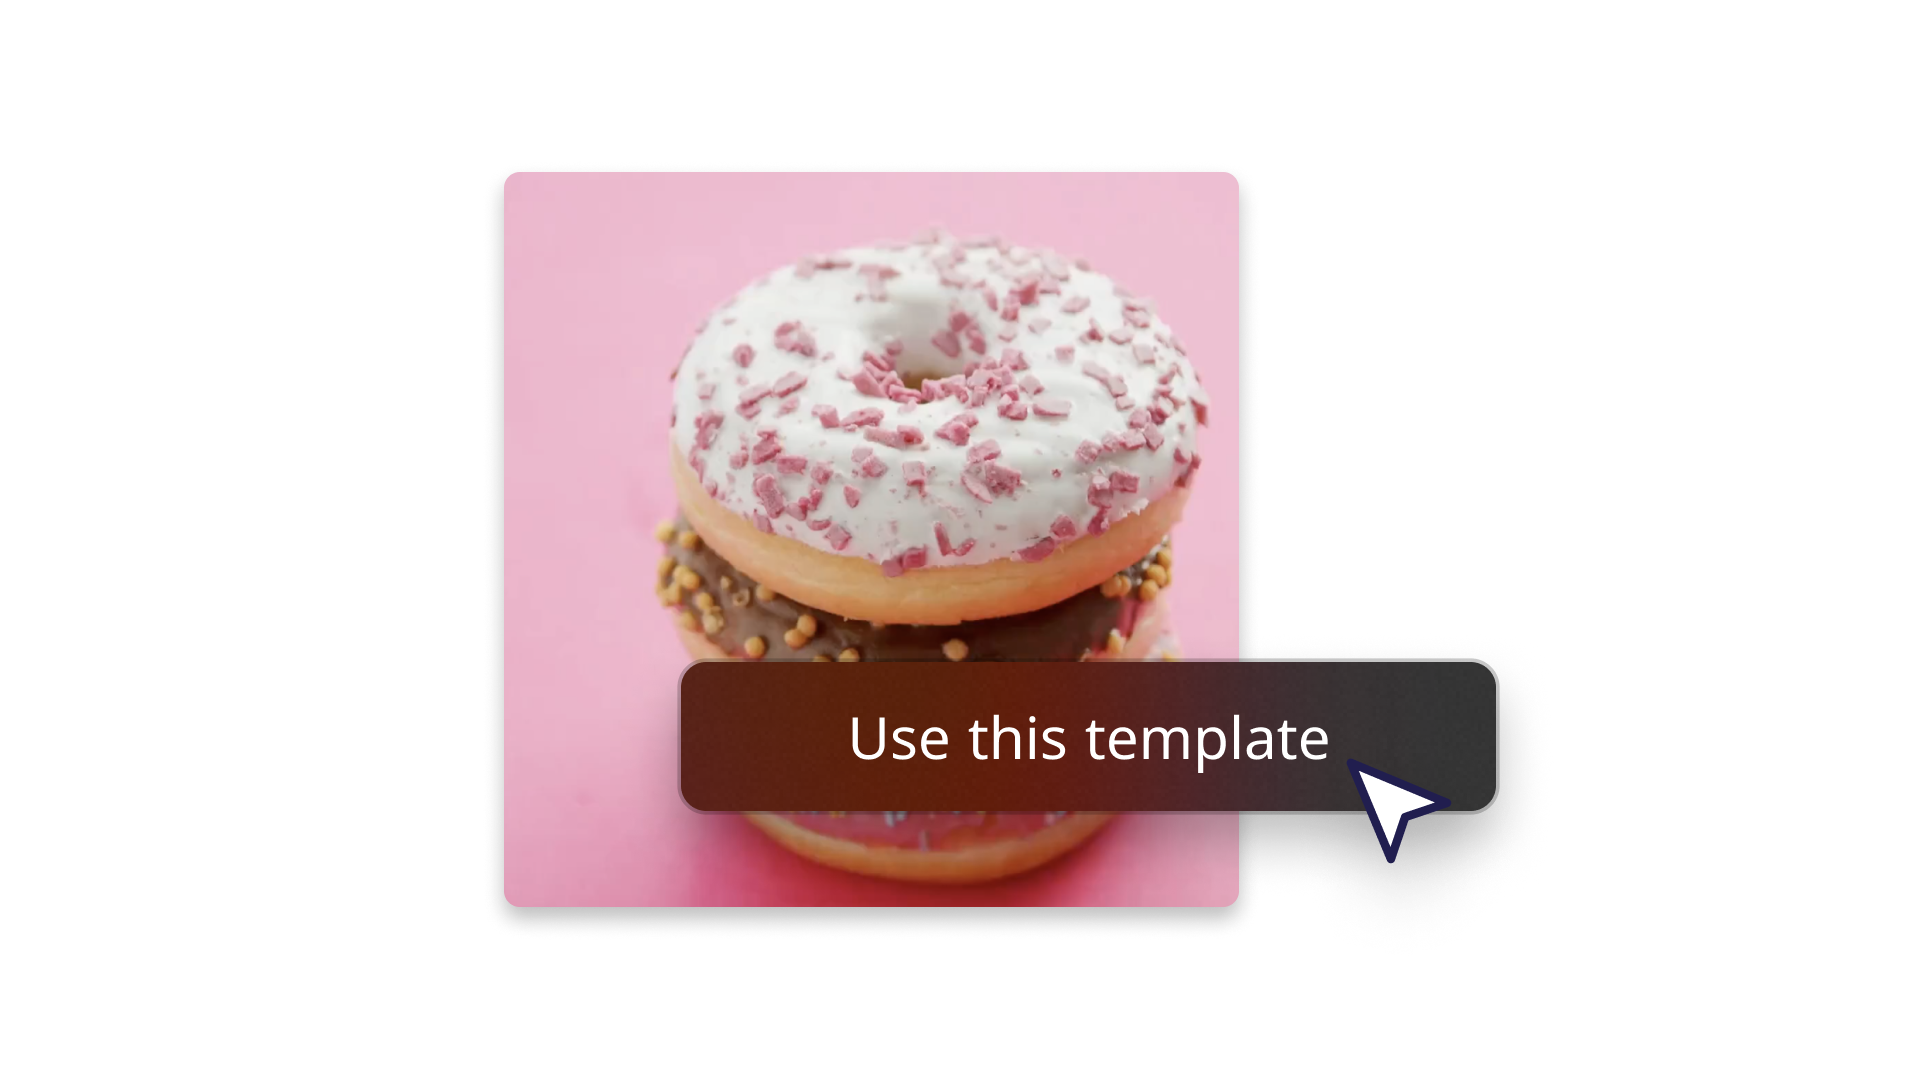 Imagen abstracta de un donut que ilustra cómo usar una plantilla 